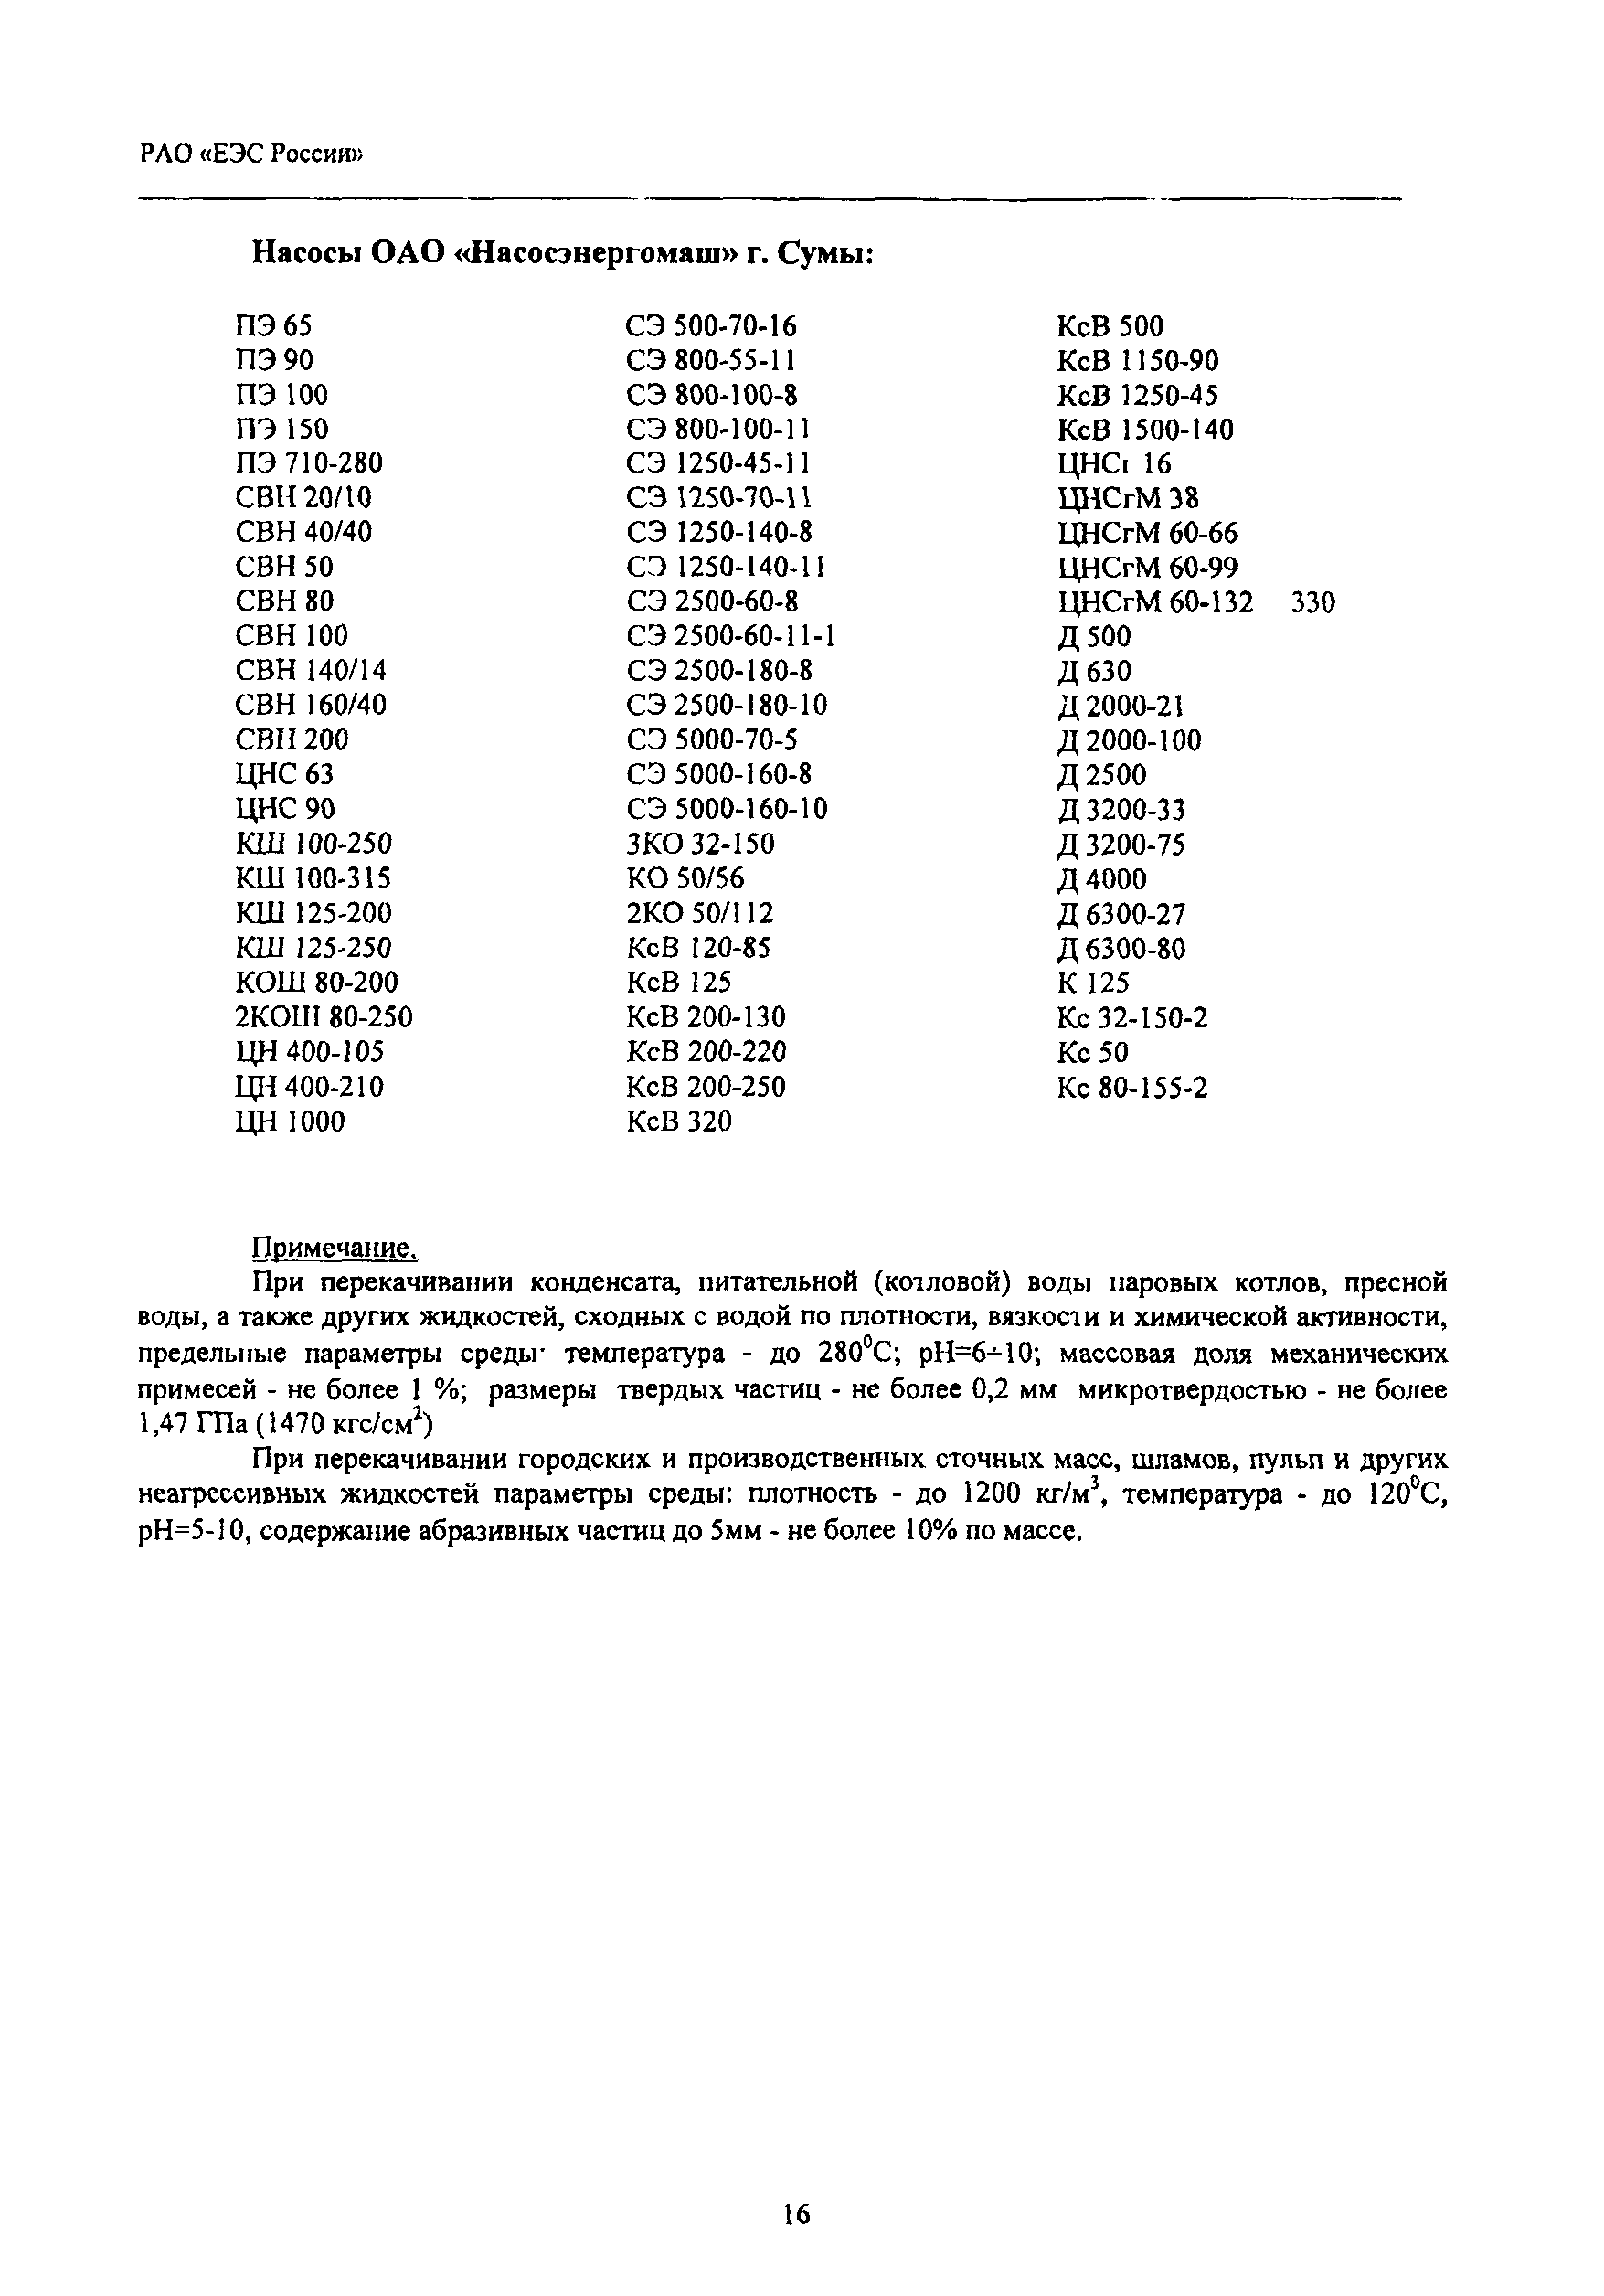 РД 153-34.1-41.602-2002